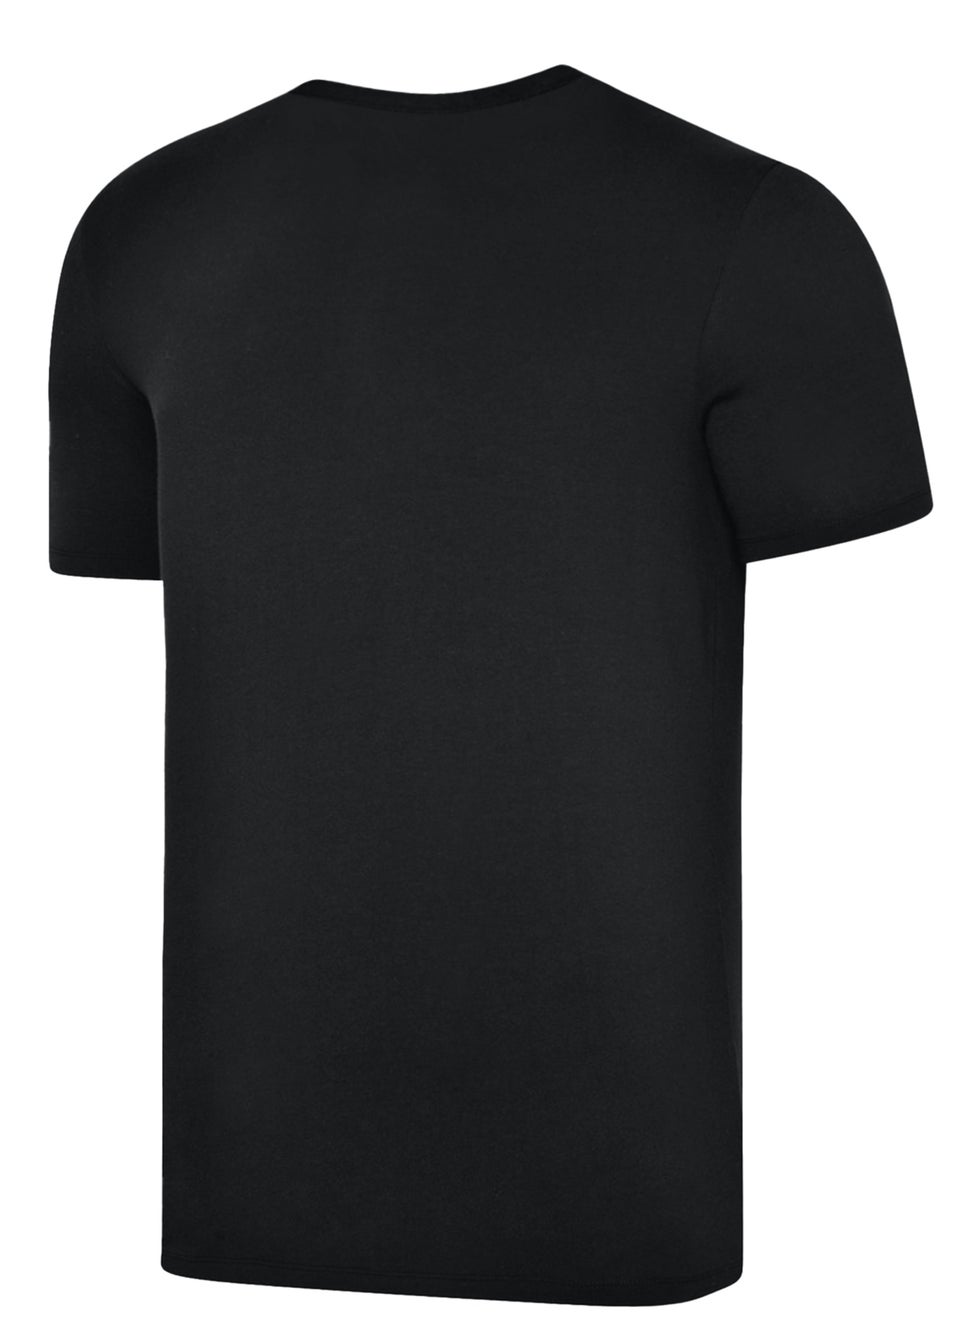 Umbro Black/White Club Leisure T-Shirt